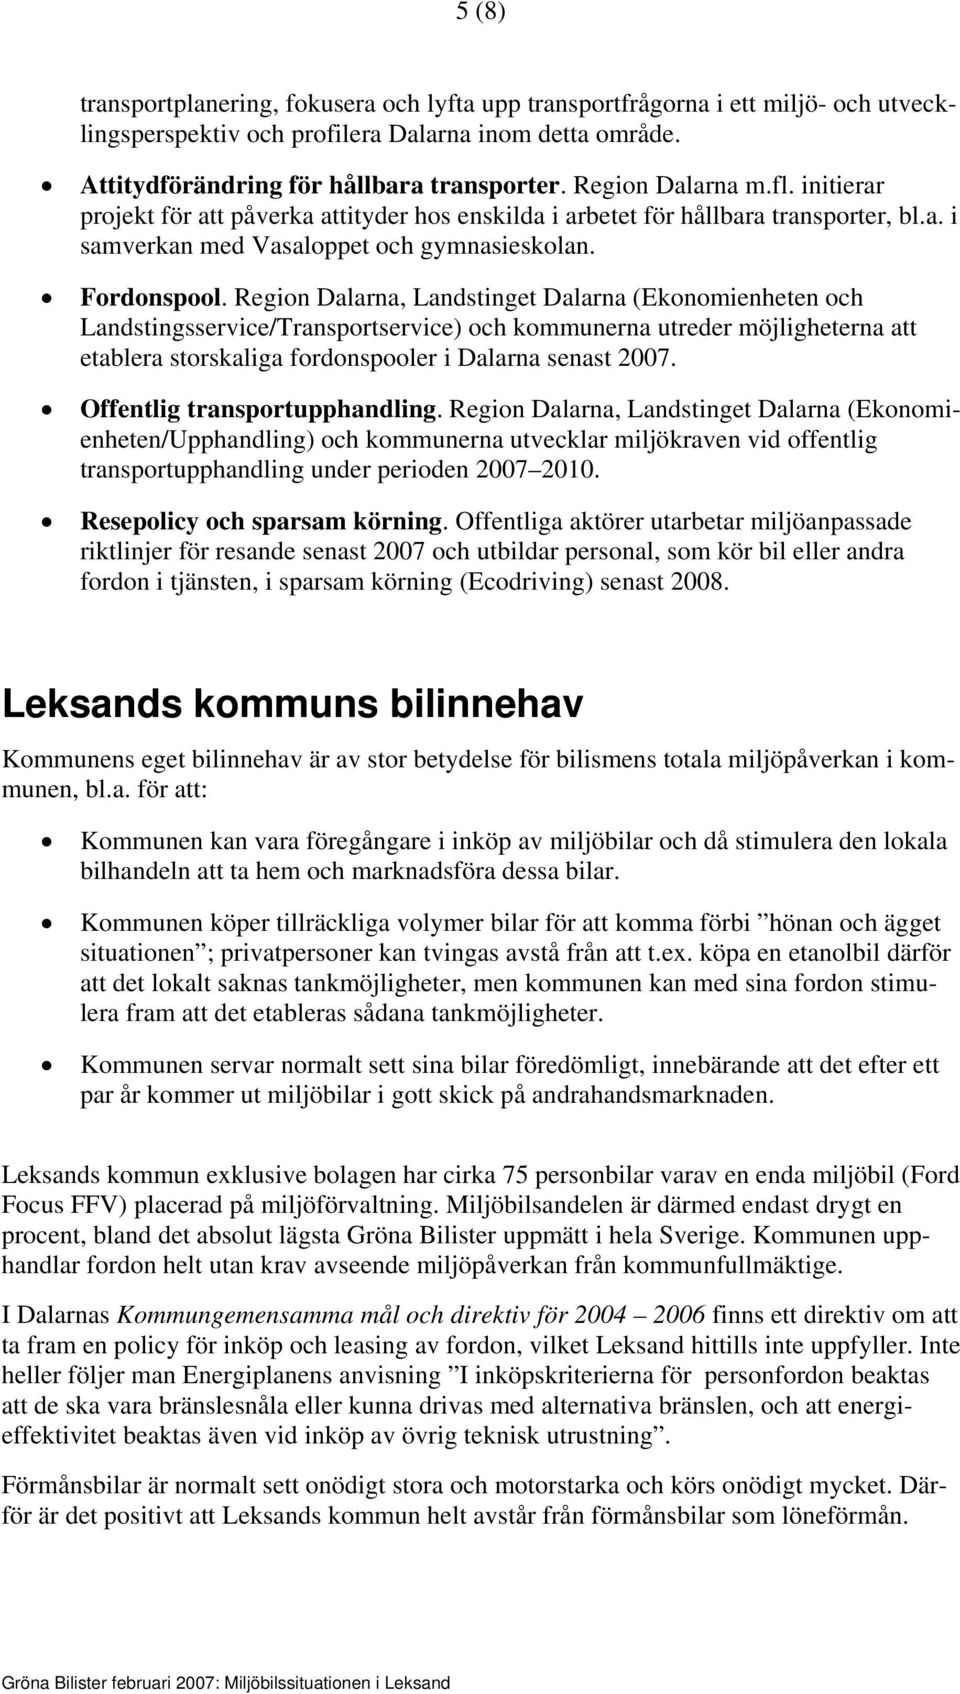 Region Dalarna, Landstinget Dalarna (Ekonomienheten och Landstingsservice/Transportservice) och kommunerna utreder möjligheterna att etablera storskaliga fordonspooler i Dalarna senast 2007.